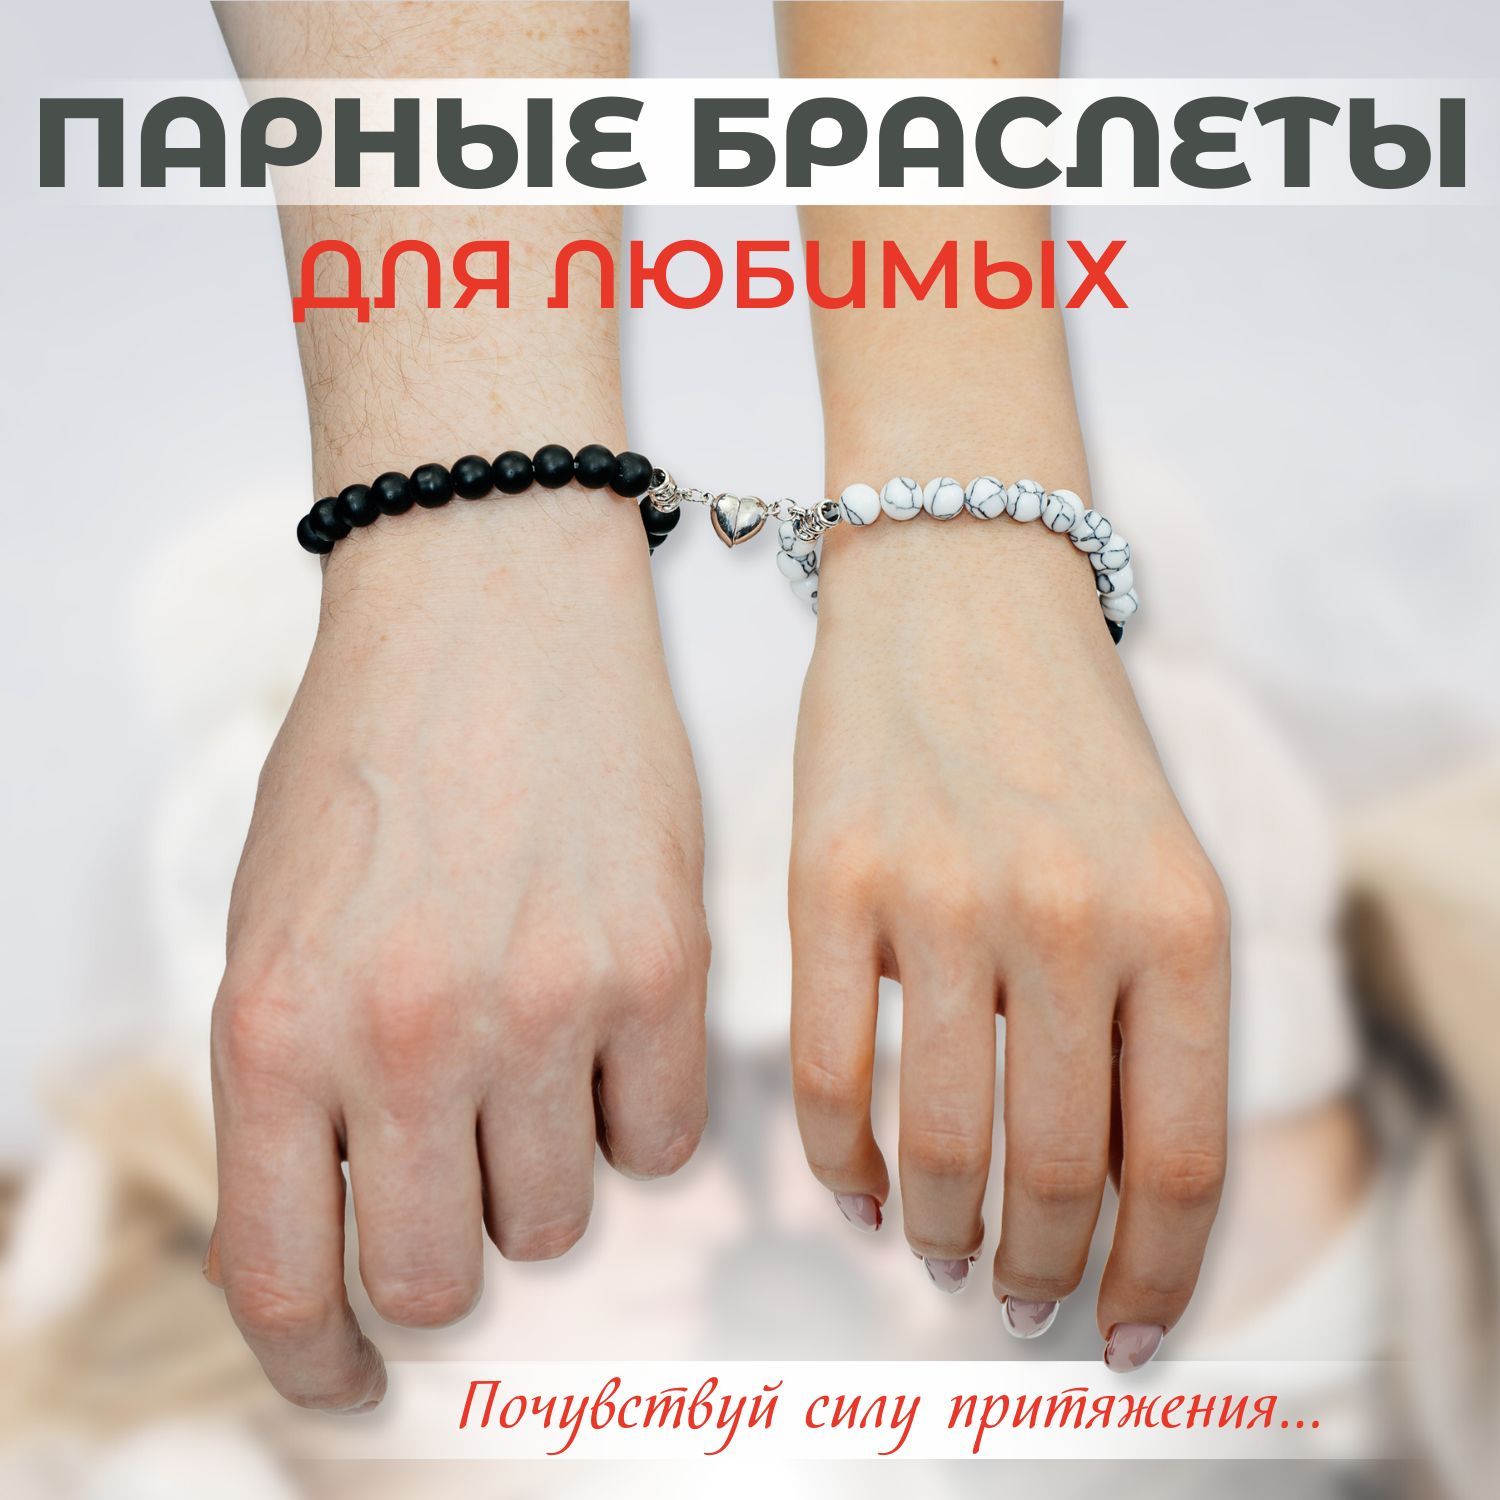 Купить мужские браслеты из металла | luchistii-sudak.ru